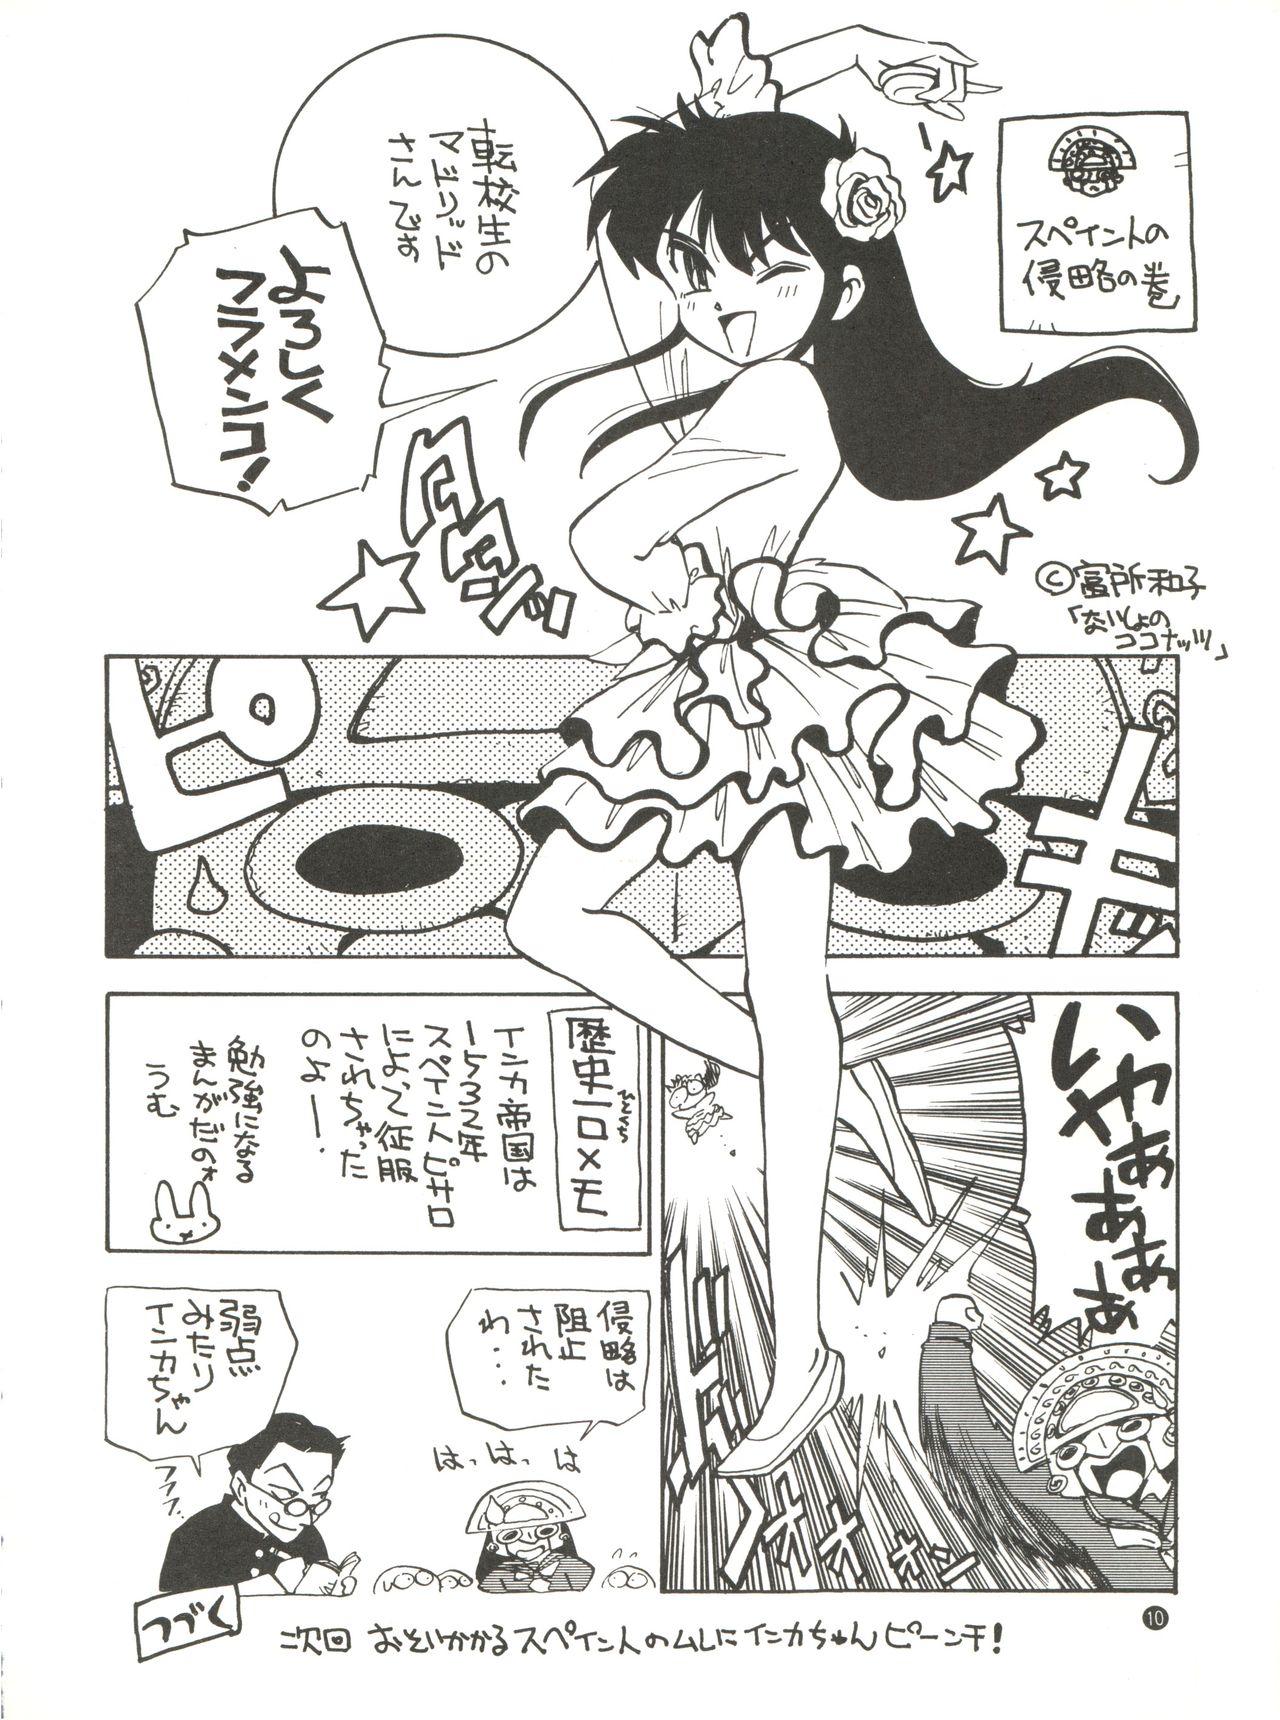 Spying Konna ni Karakute Inca Teikoku Vol. 4 - Barcode fighter Sexy Whores - Page 10